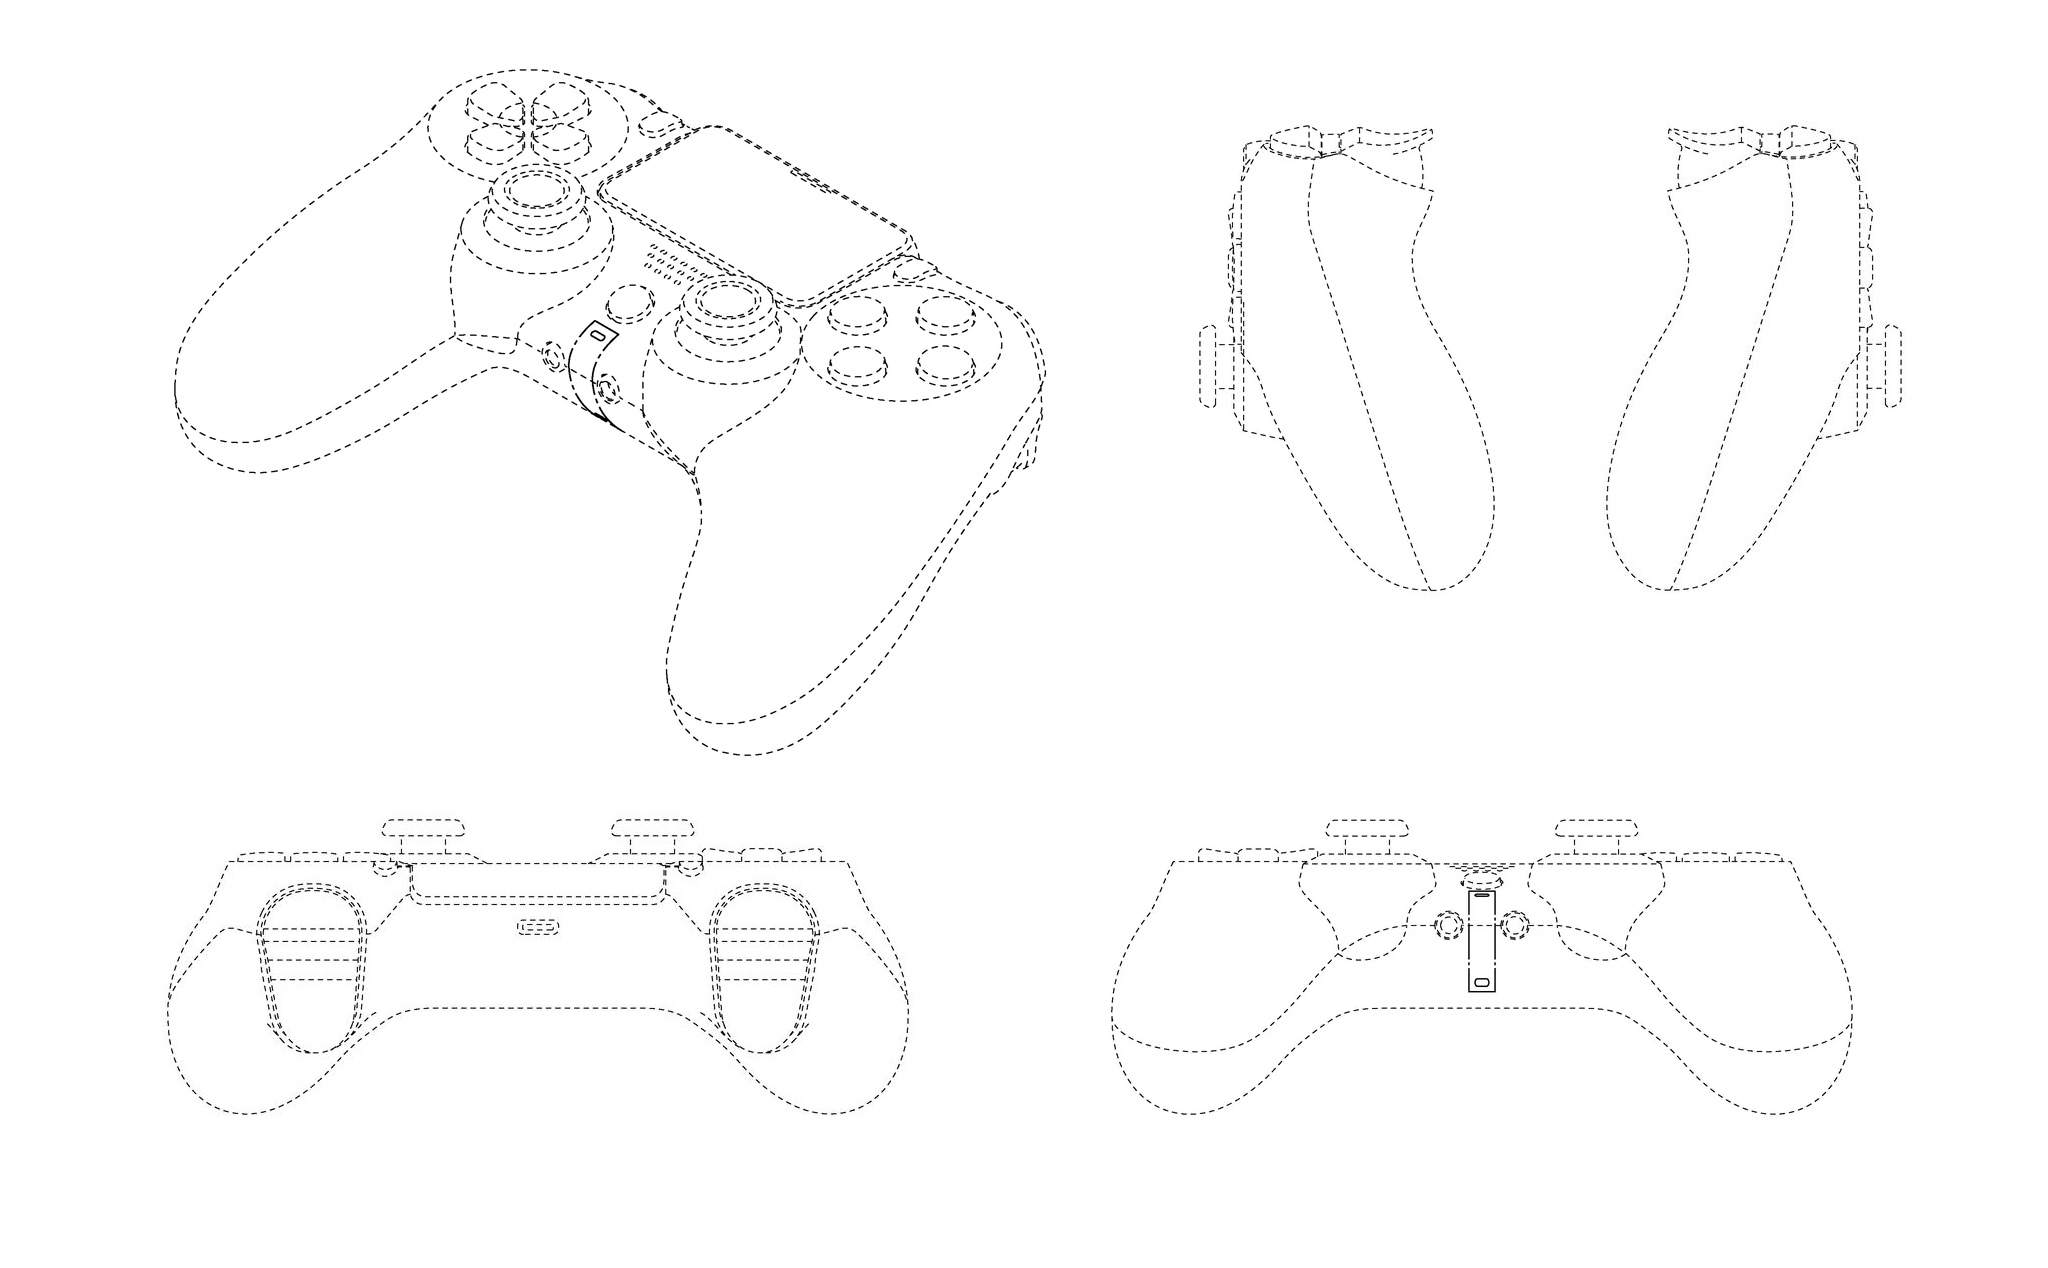 Lộ thiết kế tay cầm PS5: “Béo” như tay Xbox One, tay to cầm thoải mái hơn